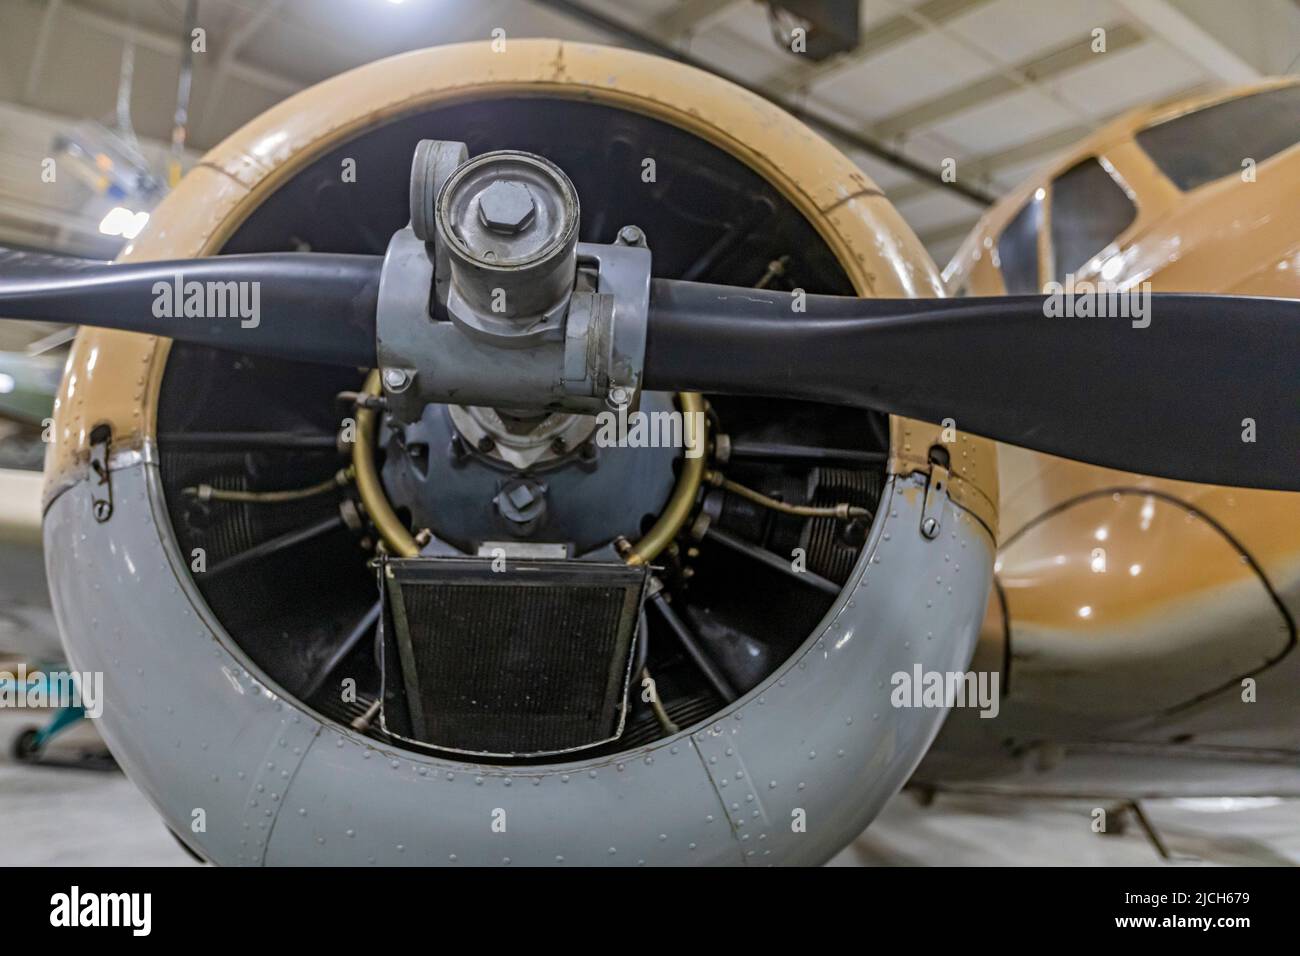 Liberal, Kansas - Museo del Aire de Mid-America. El museo exhibe más de 100 aviones. El Cessna UC-78 Bobcat fue utilizado por el Ejército de los Estados Unidos durante la WA Mundial Foto de stock